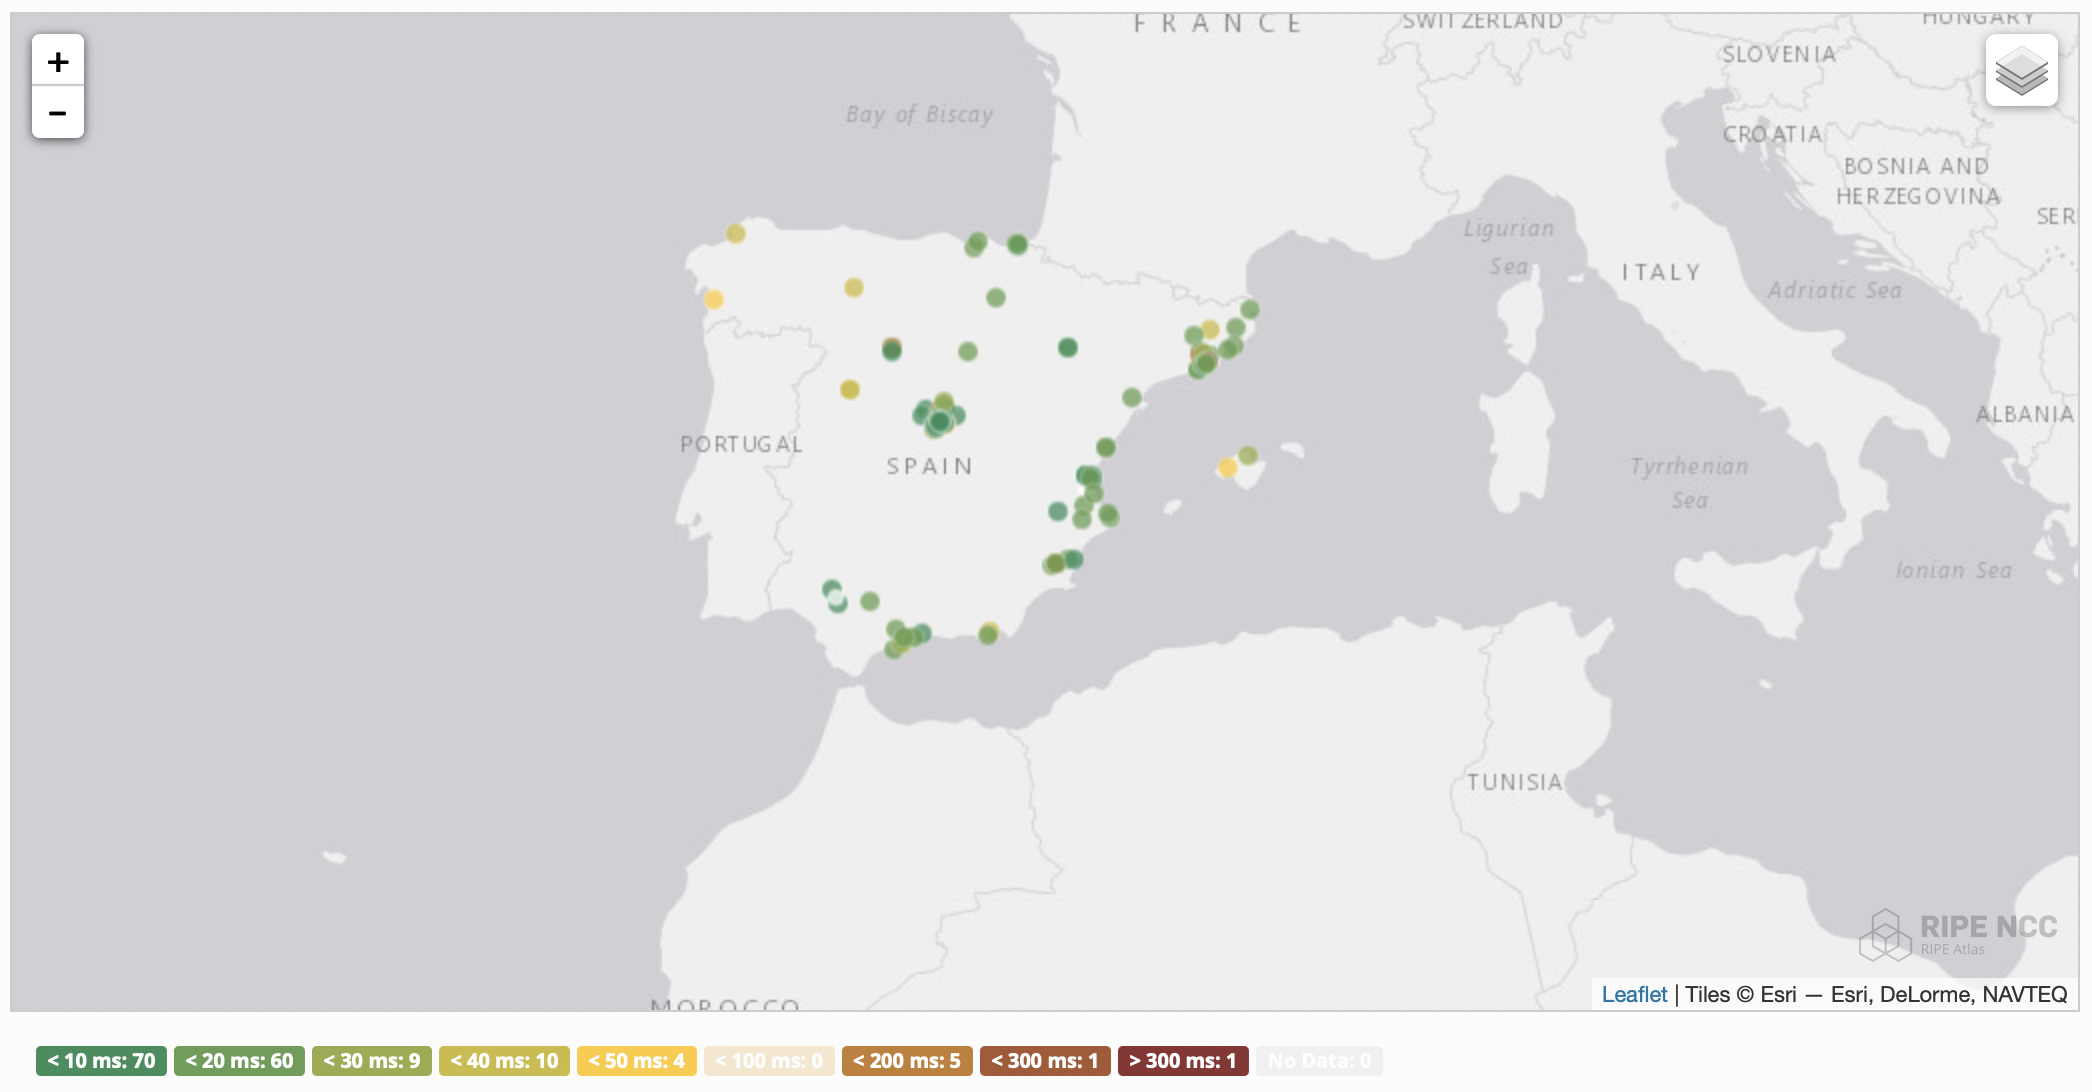 PUSHR edge network latency across Spain, EU